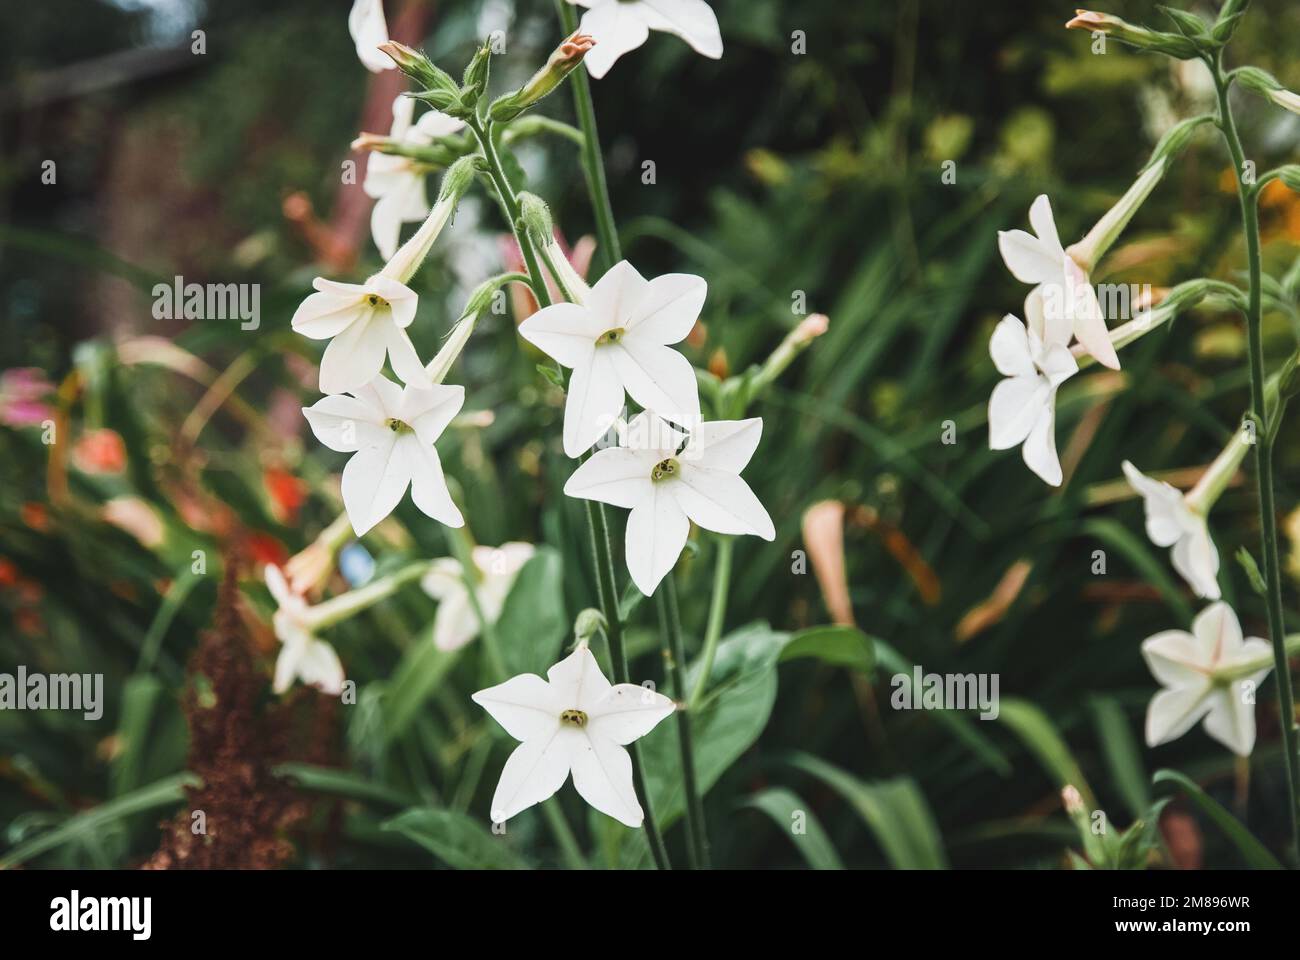 Tabac perse Nicotiana alata plante à fleurs blanches poussant dans le jardin Banque D'Images